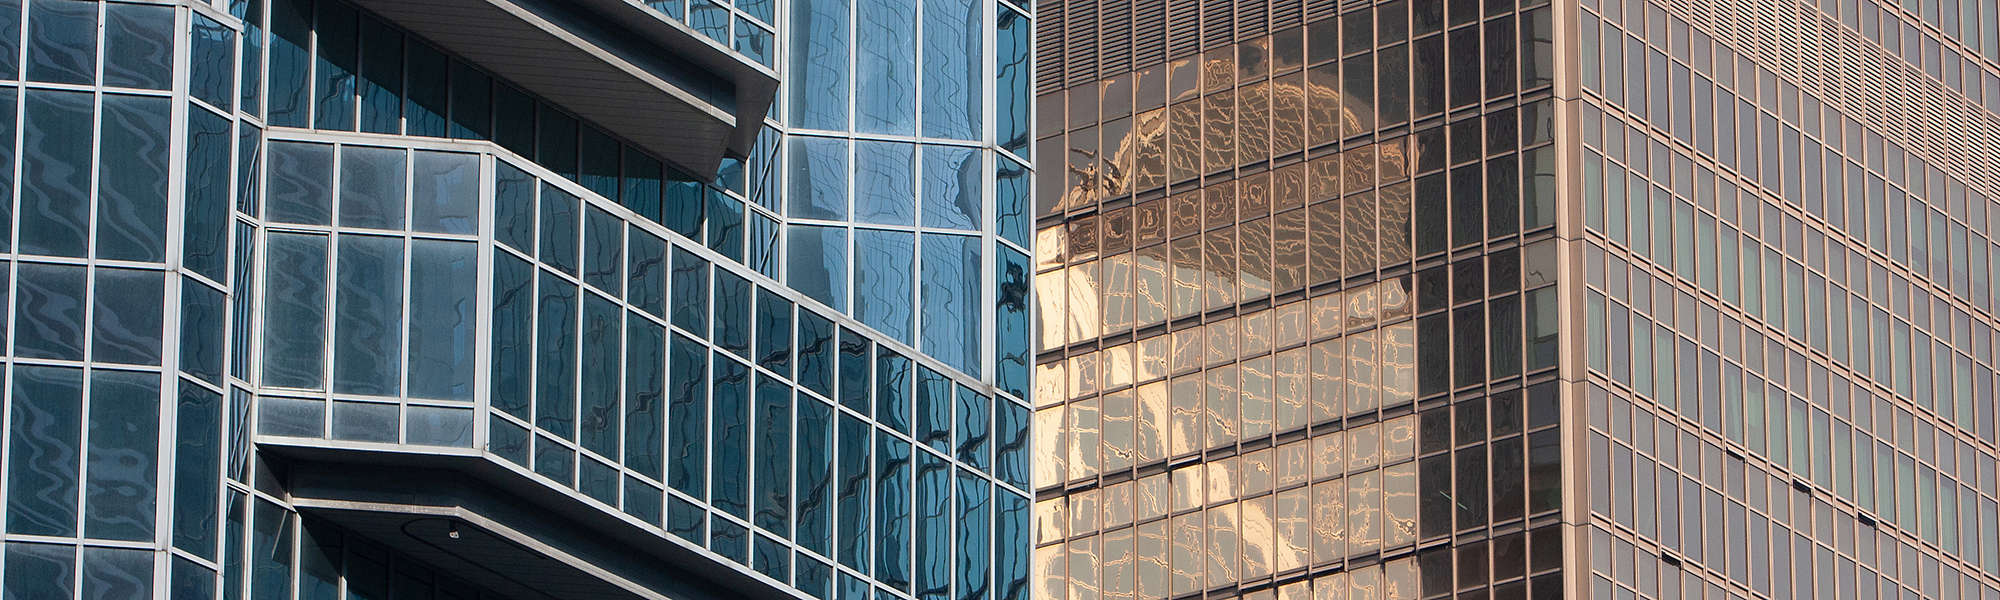  Close up of The Business Tower at Hong Kong city